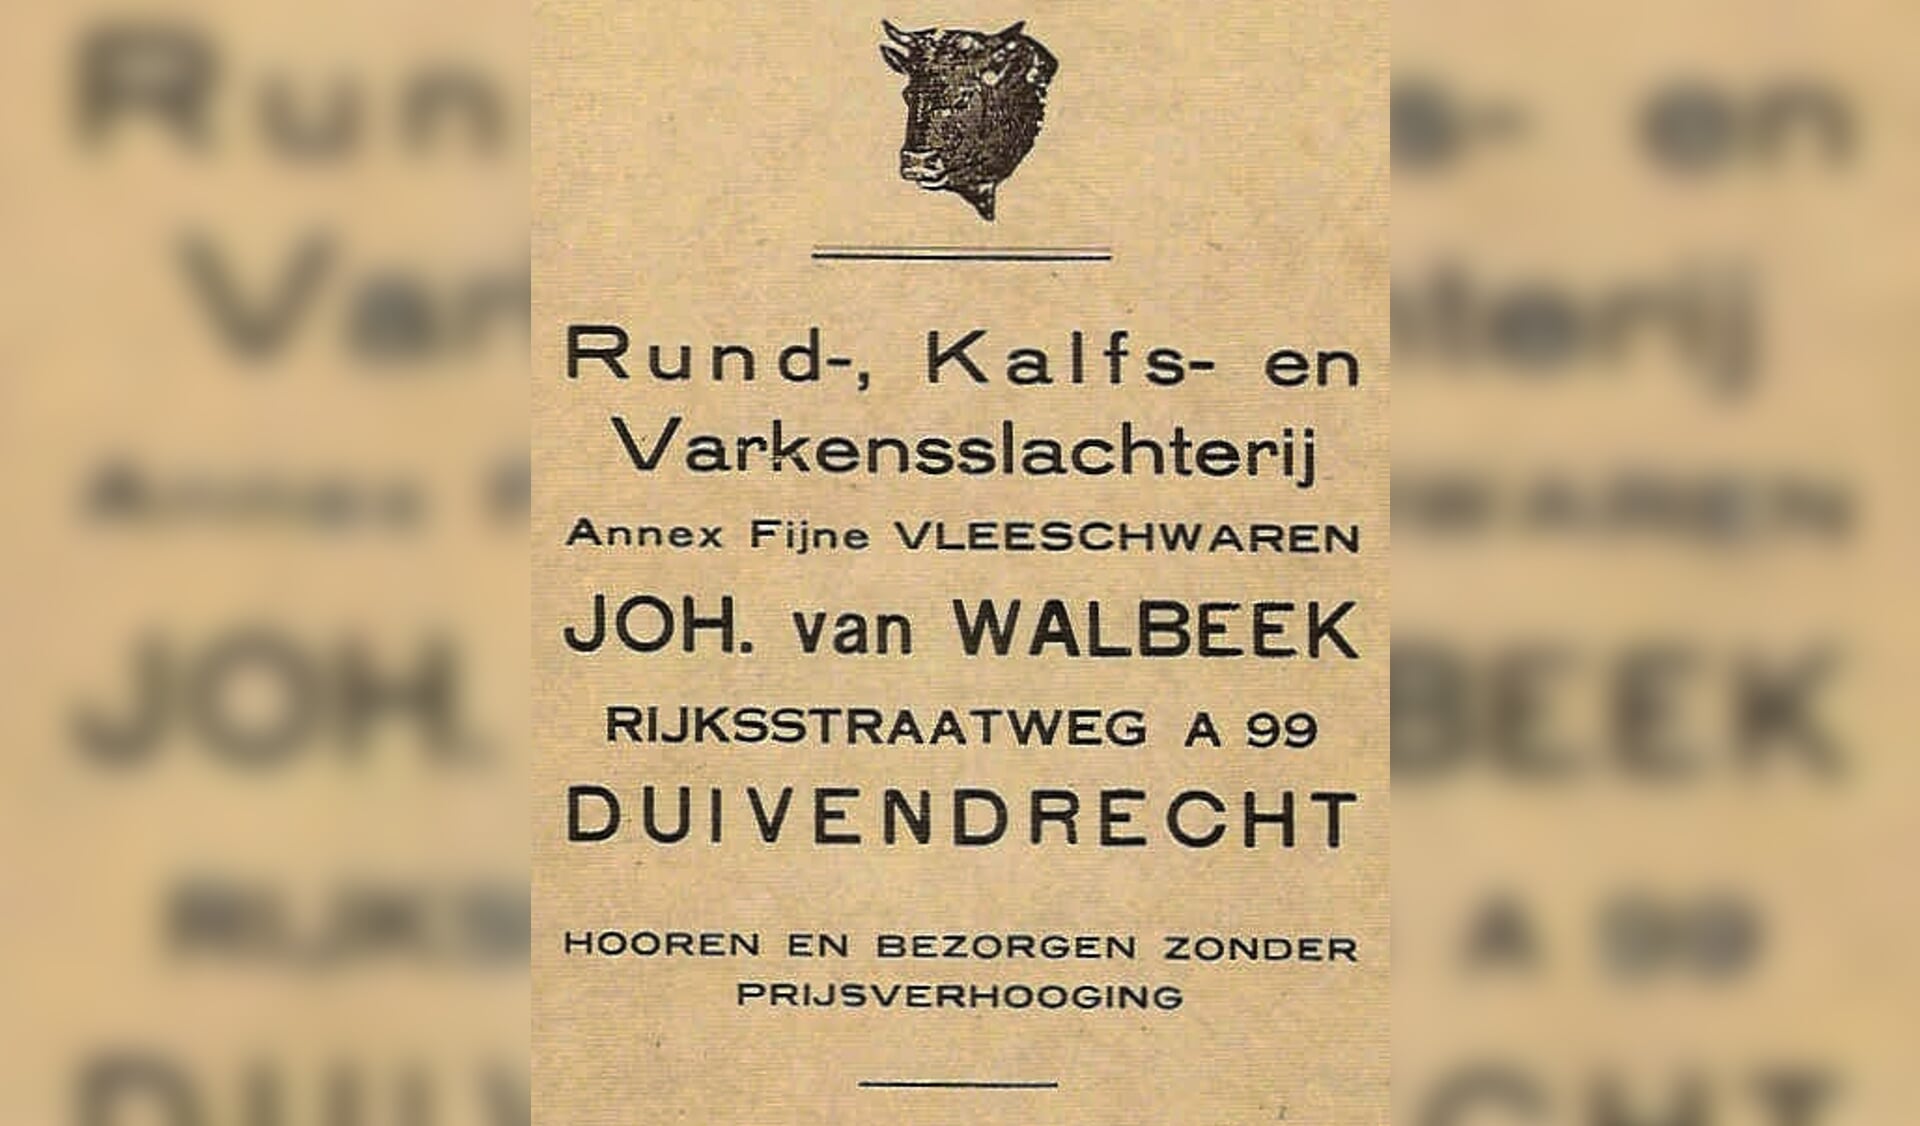 Een reclame van de slagerij aan het einde van de Rijksstraatweg nr. 99a (de oude nummering) te Duivendrecht uit 1939. 

De slagerij lag zowel in gemeente Ouder-Amstel als in gemeente Weesperkarspel.